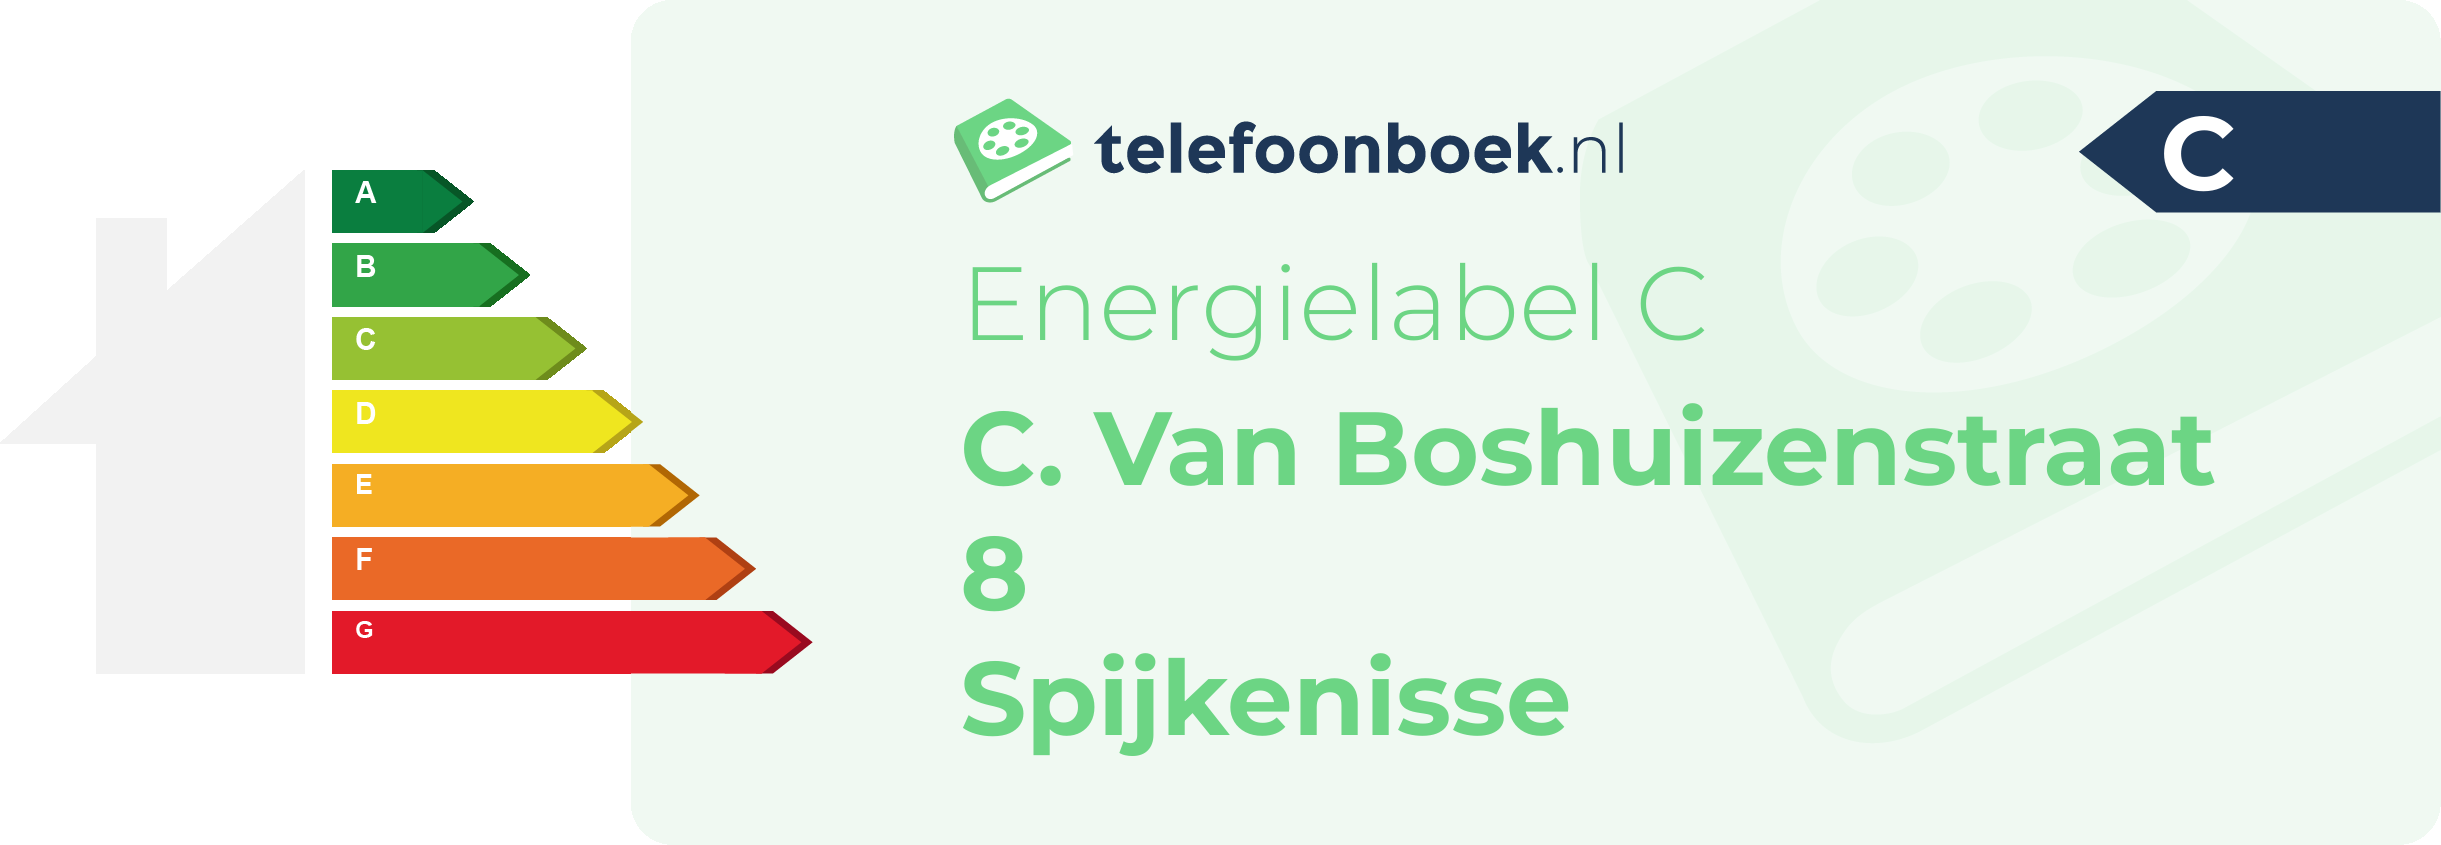 Energielabel C. Van Boshuizenstraat 8 Spijkenisse